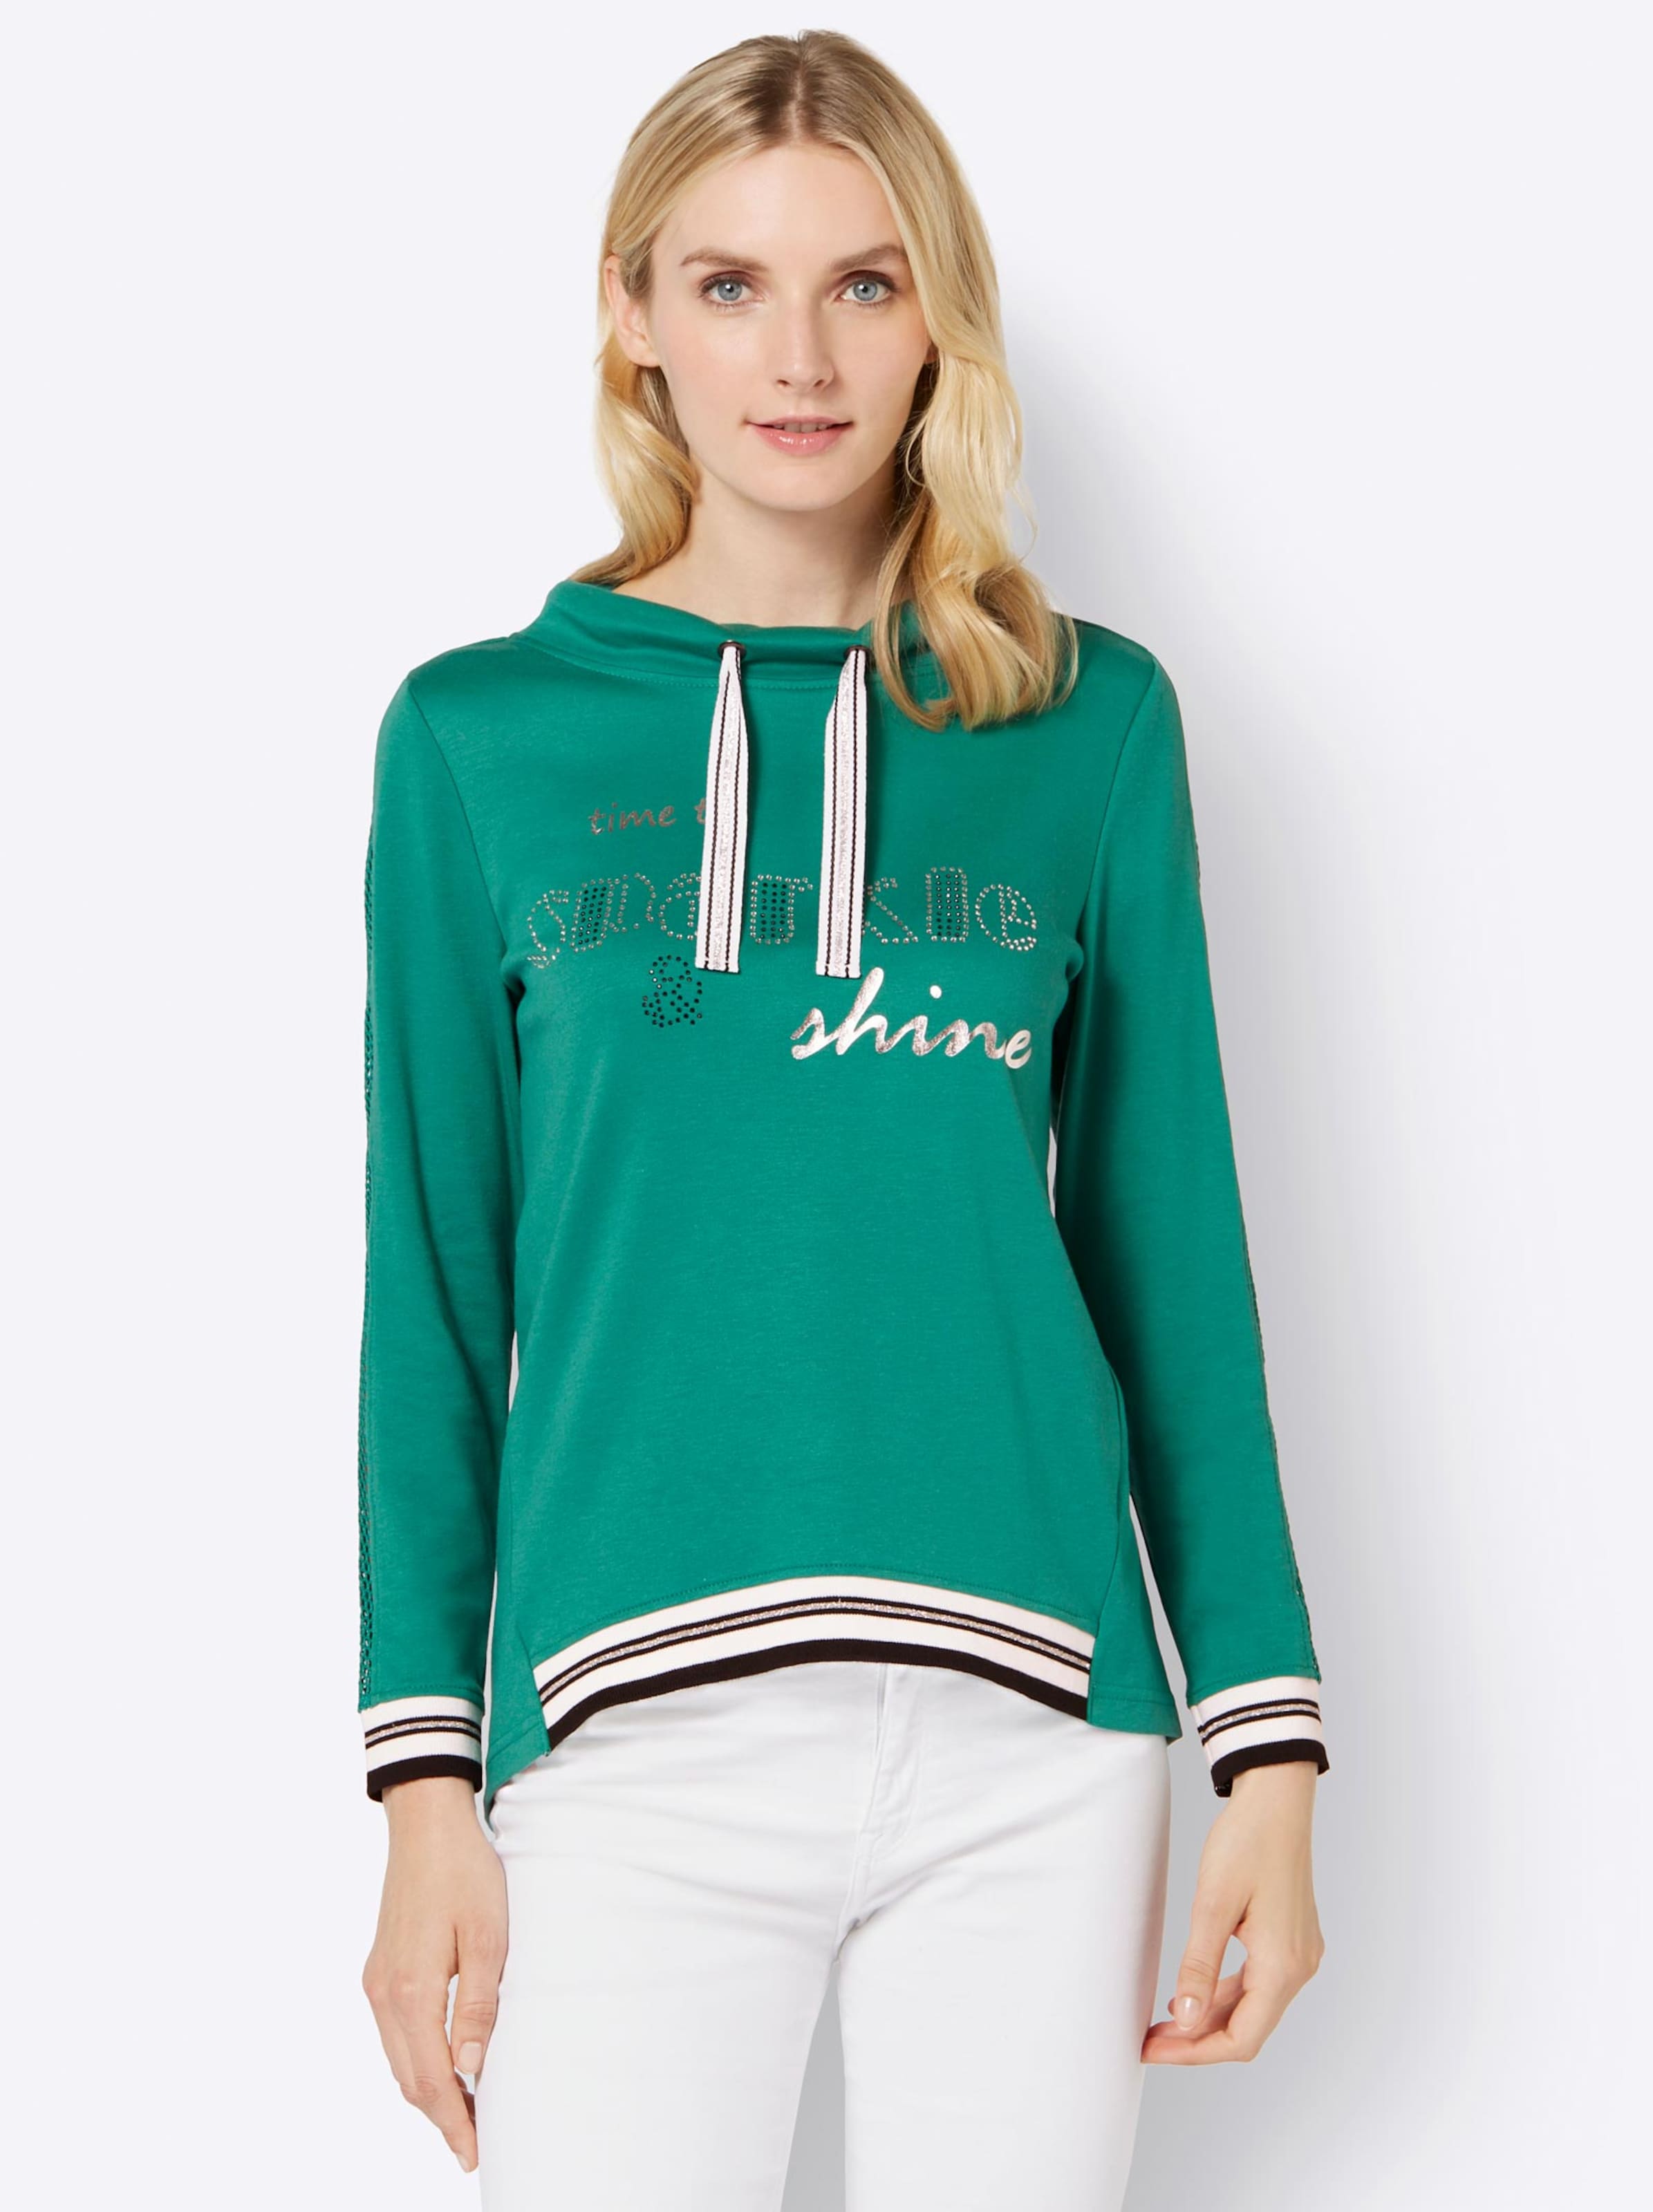 Damenmode Shirts Sweatshirt in smaragd 